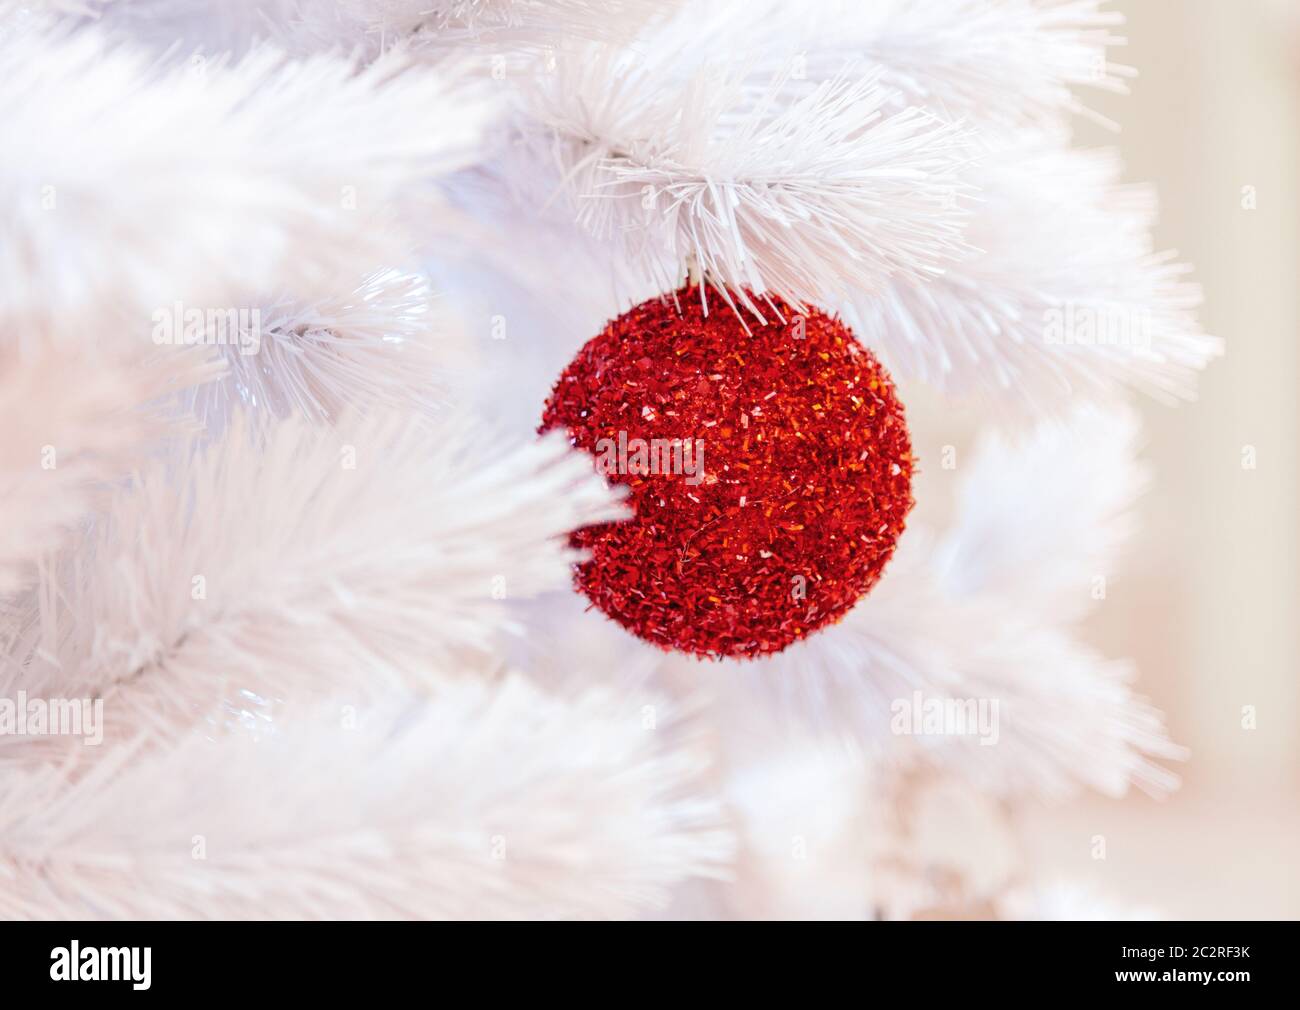 Weihnachtsbaum mit silbernen Kugeln Ornamenten. Geschmückter Weihnachtsbaum aus der Nähe. Bälle und beleuchtete Girlande mit Taschenlampen. N Stockfoto